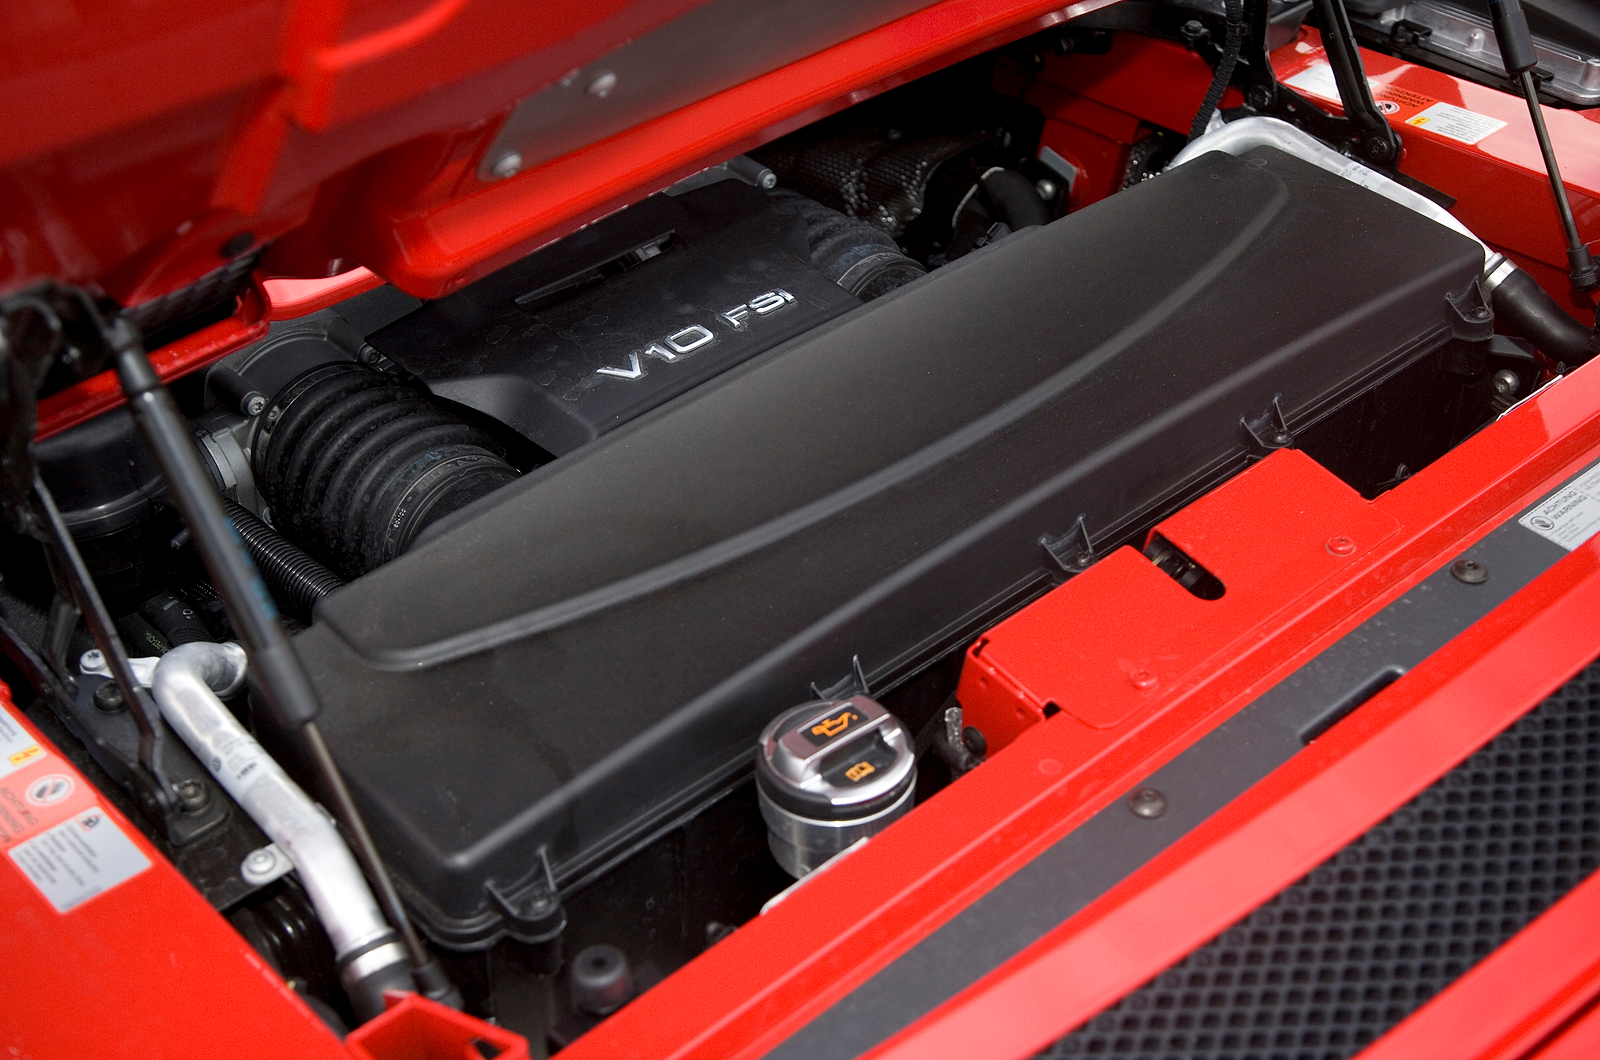 5.2-litre V10 Audi R8 engine